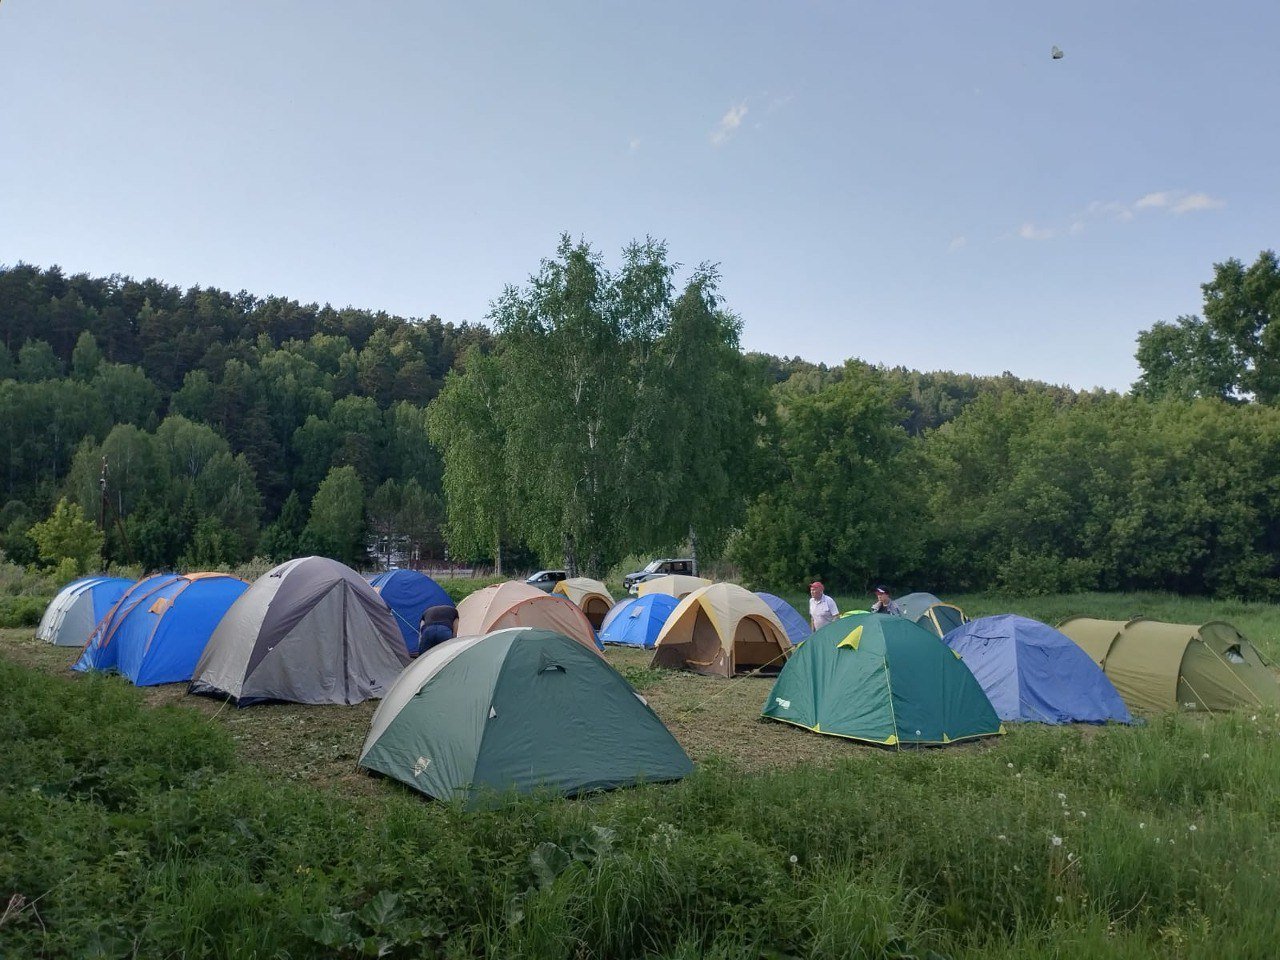 День палаточного лагеря